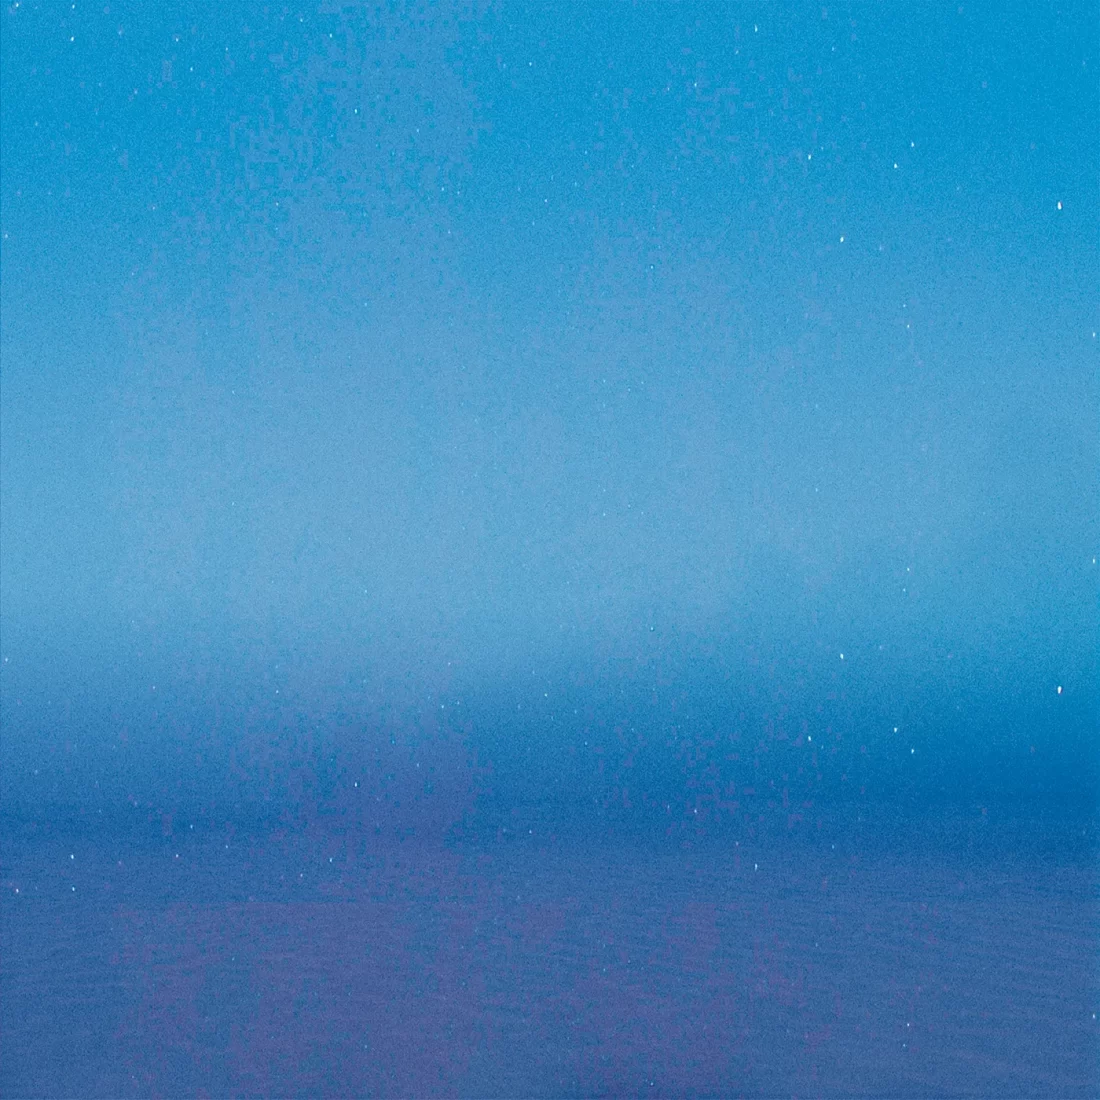 Textura azul que mescla o céu com o mar. Criada por Rodrigo Baumgratz.